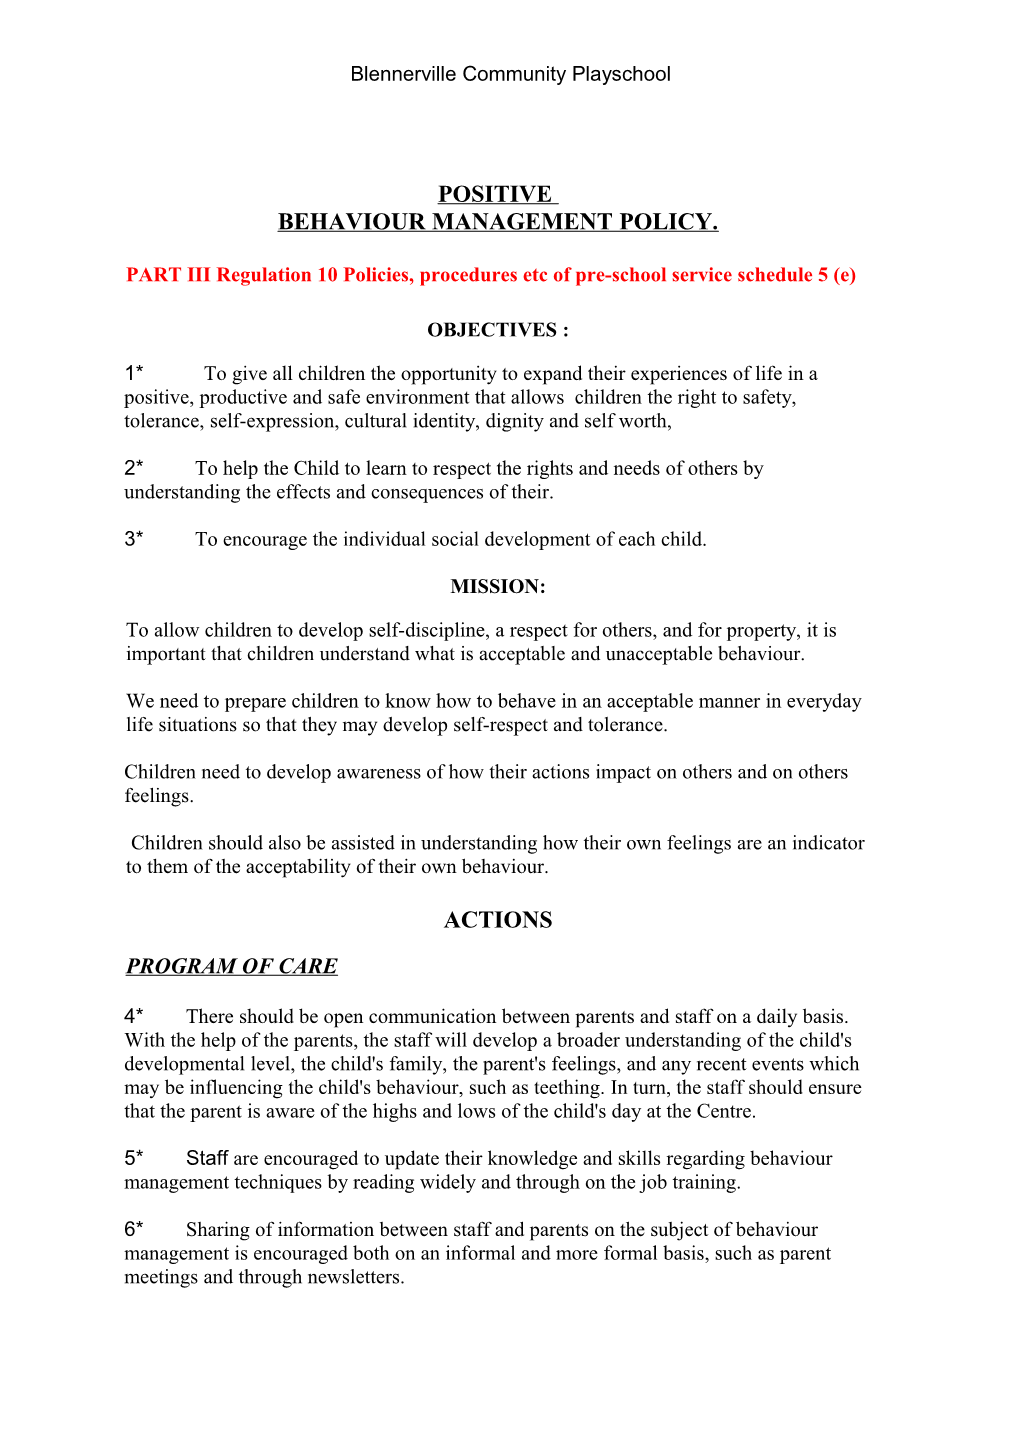 PART III Regulation 10 Policies, Procedures Etc of Pre-School Service Schedule 5 (E)